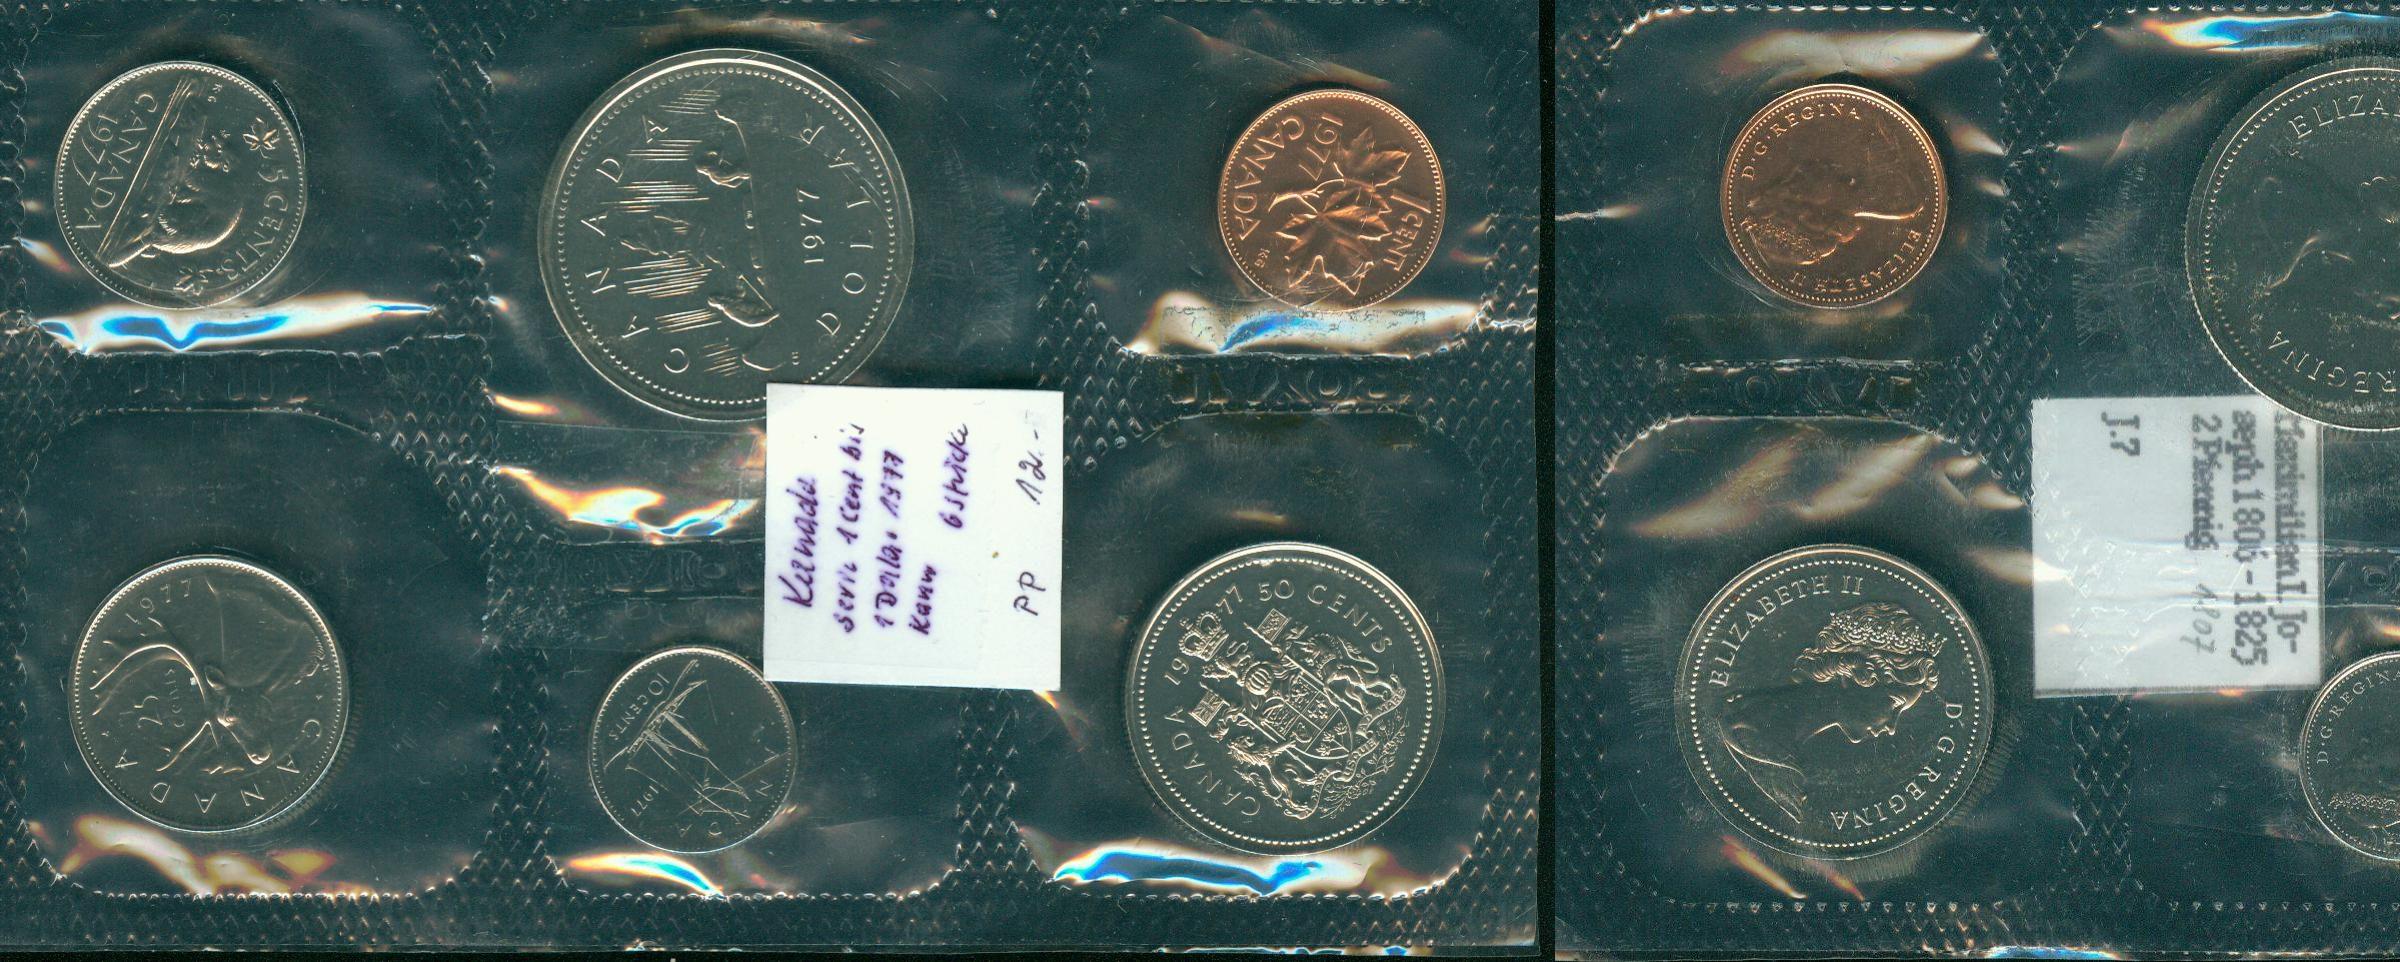 Foto Kanada Serie 1 Cent bis 1 Dollar (6 Stück) 1977